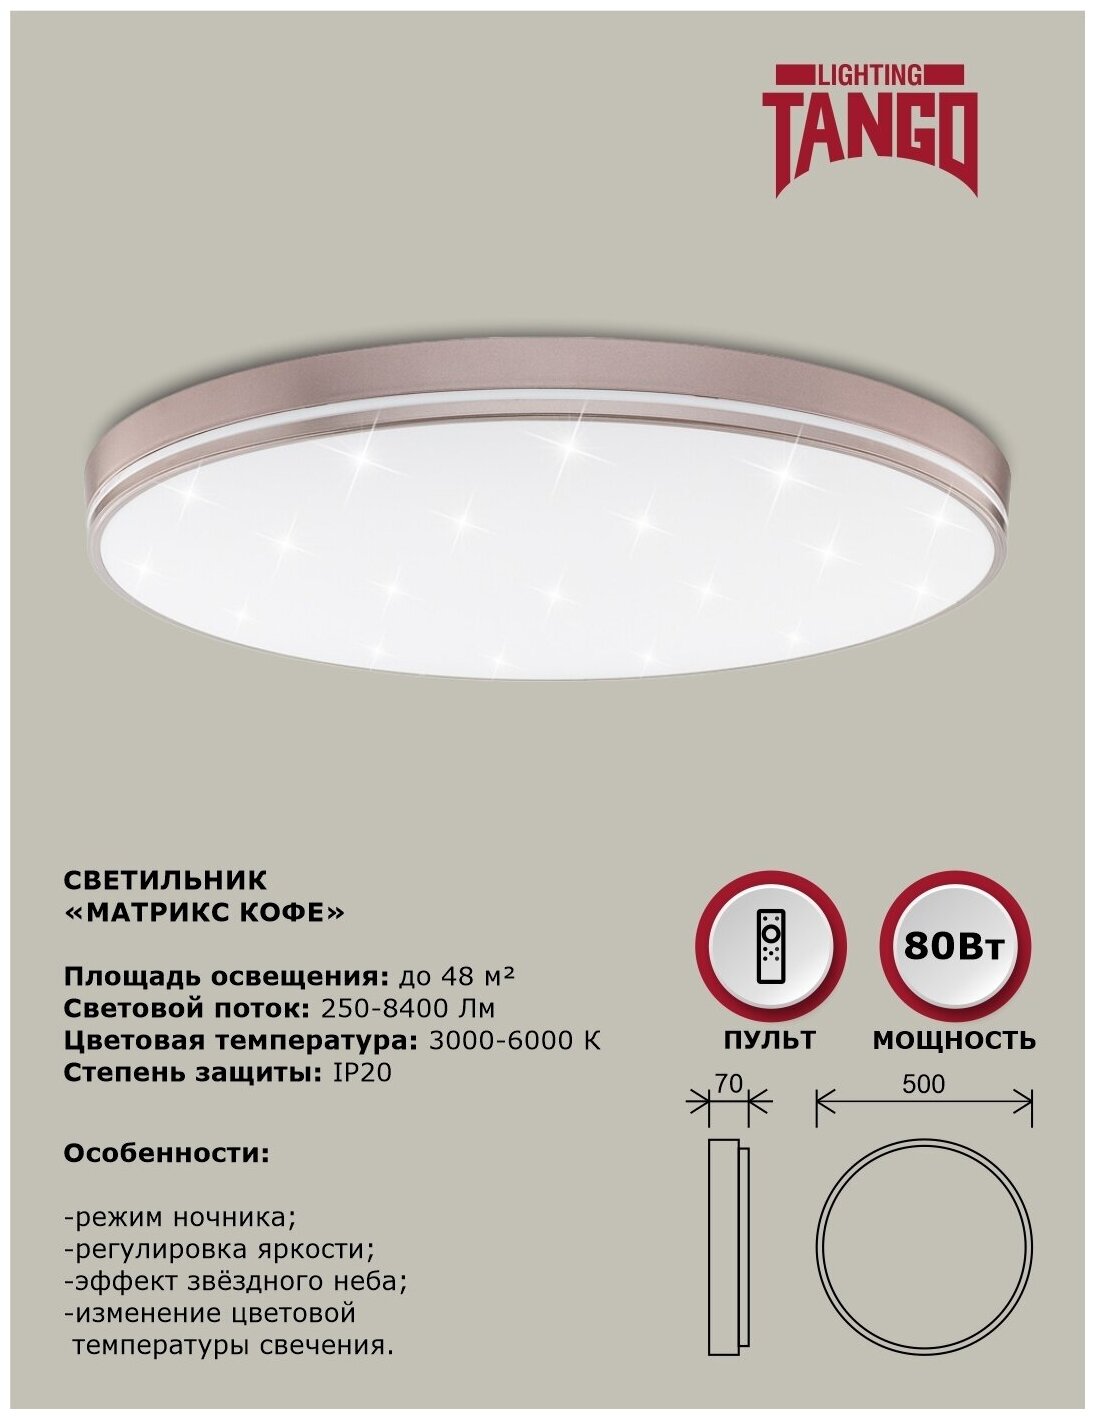 Cветильник LED настенно-потолочный "матрикс кофе" 80 Вт (500*70, основание 450мм) с ИК ДУ TANGO россия